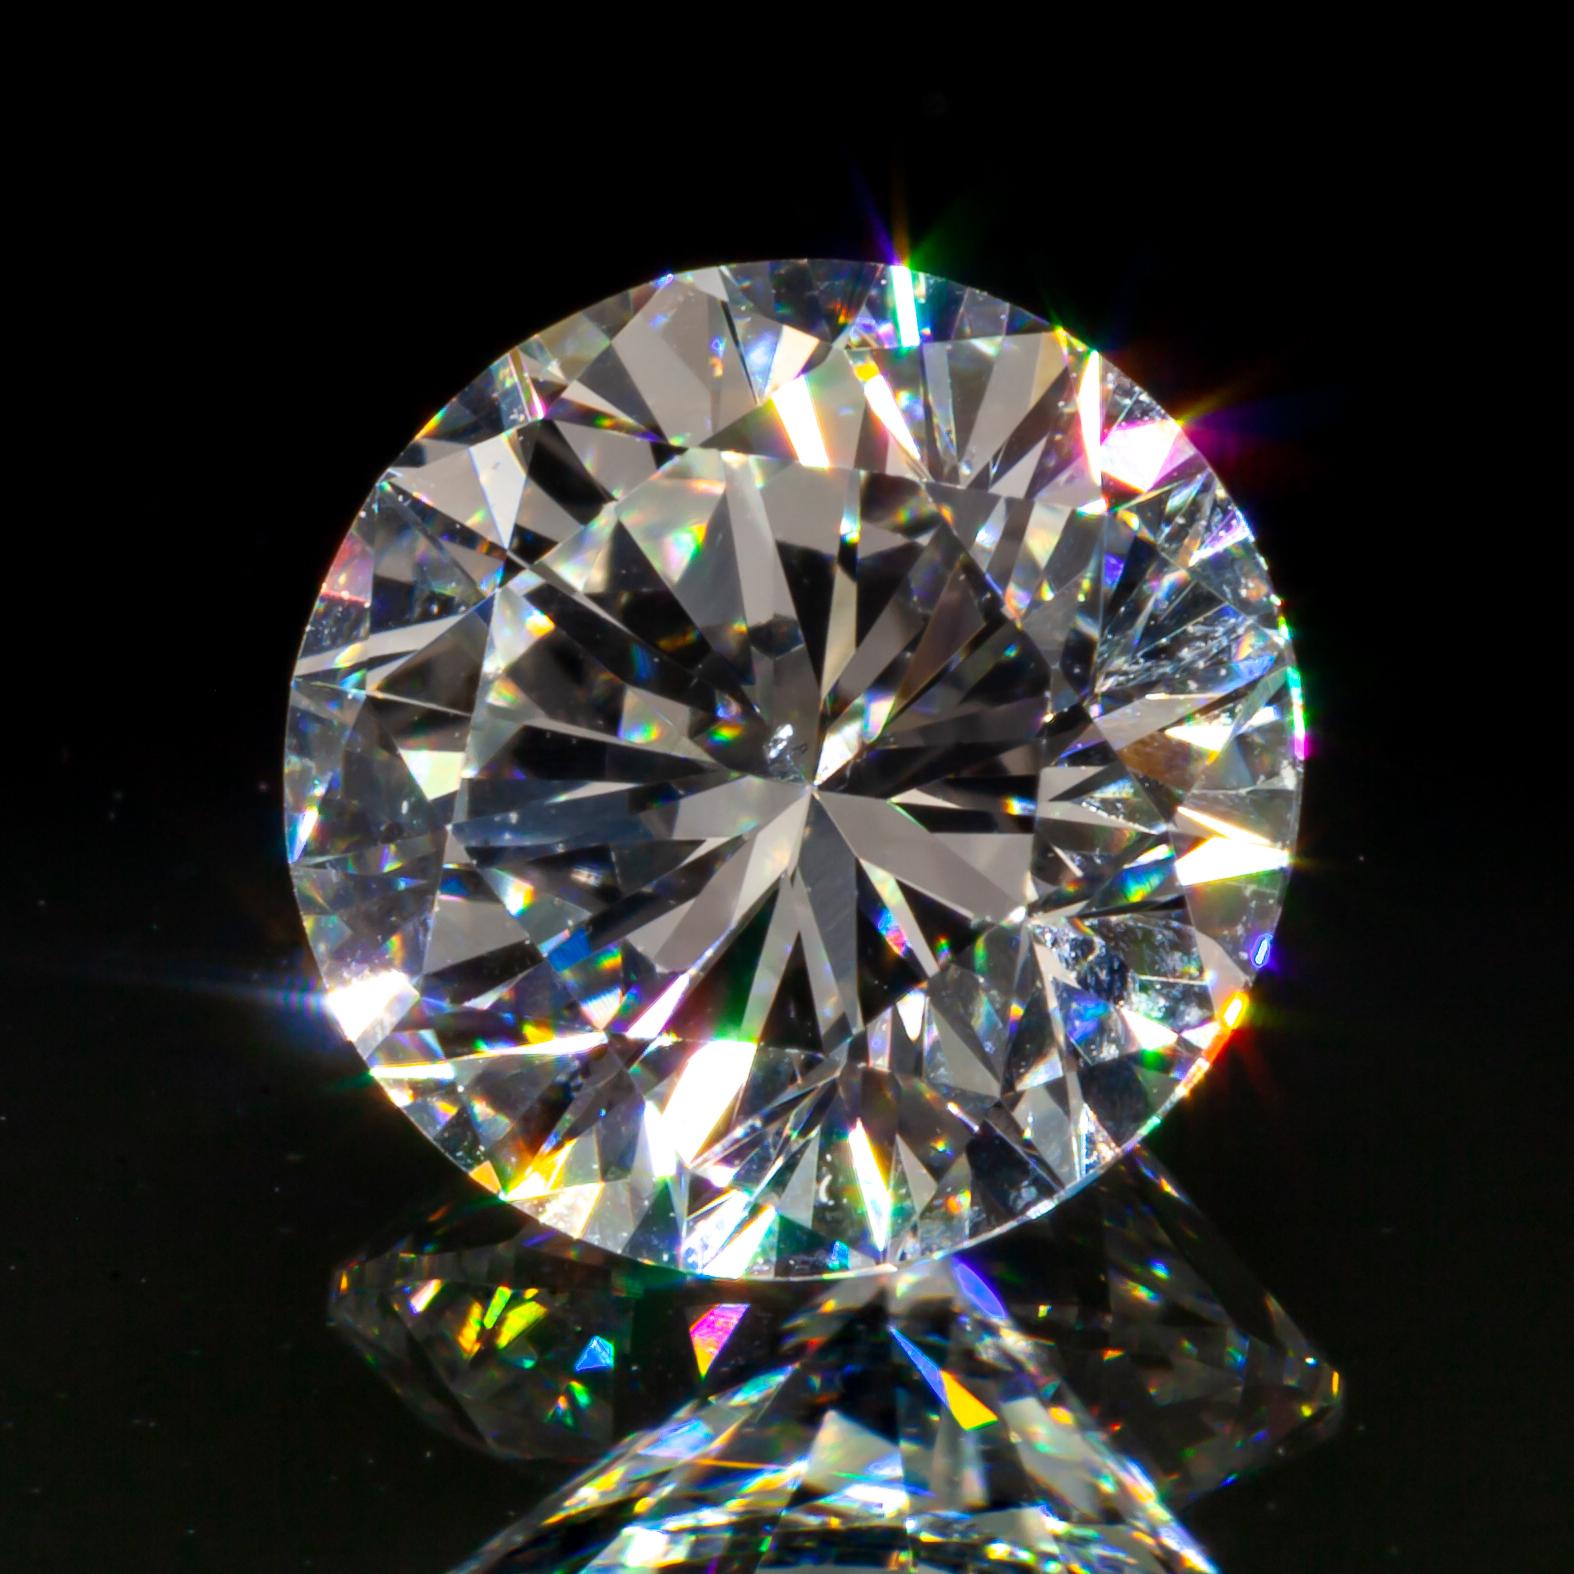 Diamant taille ronde brillant de 1,14 carat non serti H/ SI1 certifié GIA

Informations générales sur le diamant
Numéro de rapport GIA : 12010116
Taille du diamant:Brilliante ronde
Dimensions : 6.63  x  6.59  -  4.25 mm

Résultats de la